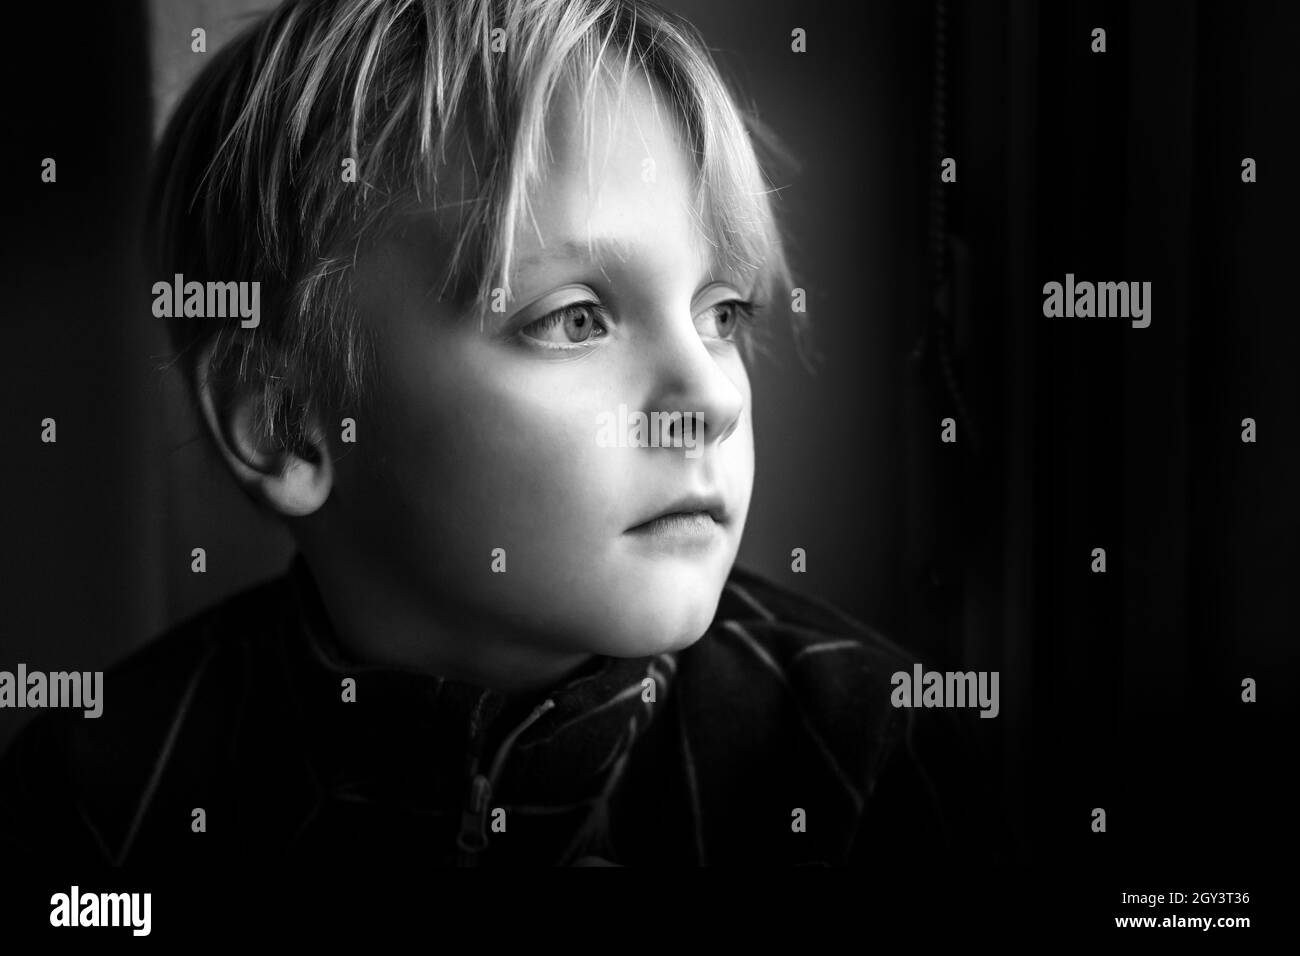 Scatto in scala di grigi di un ragazzo caucasico con grandi occhi profondi su sfondo nero Foto Stock